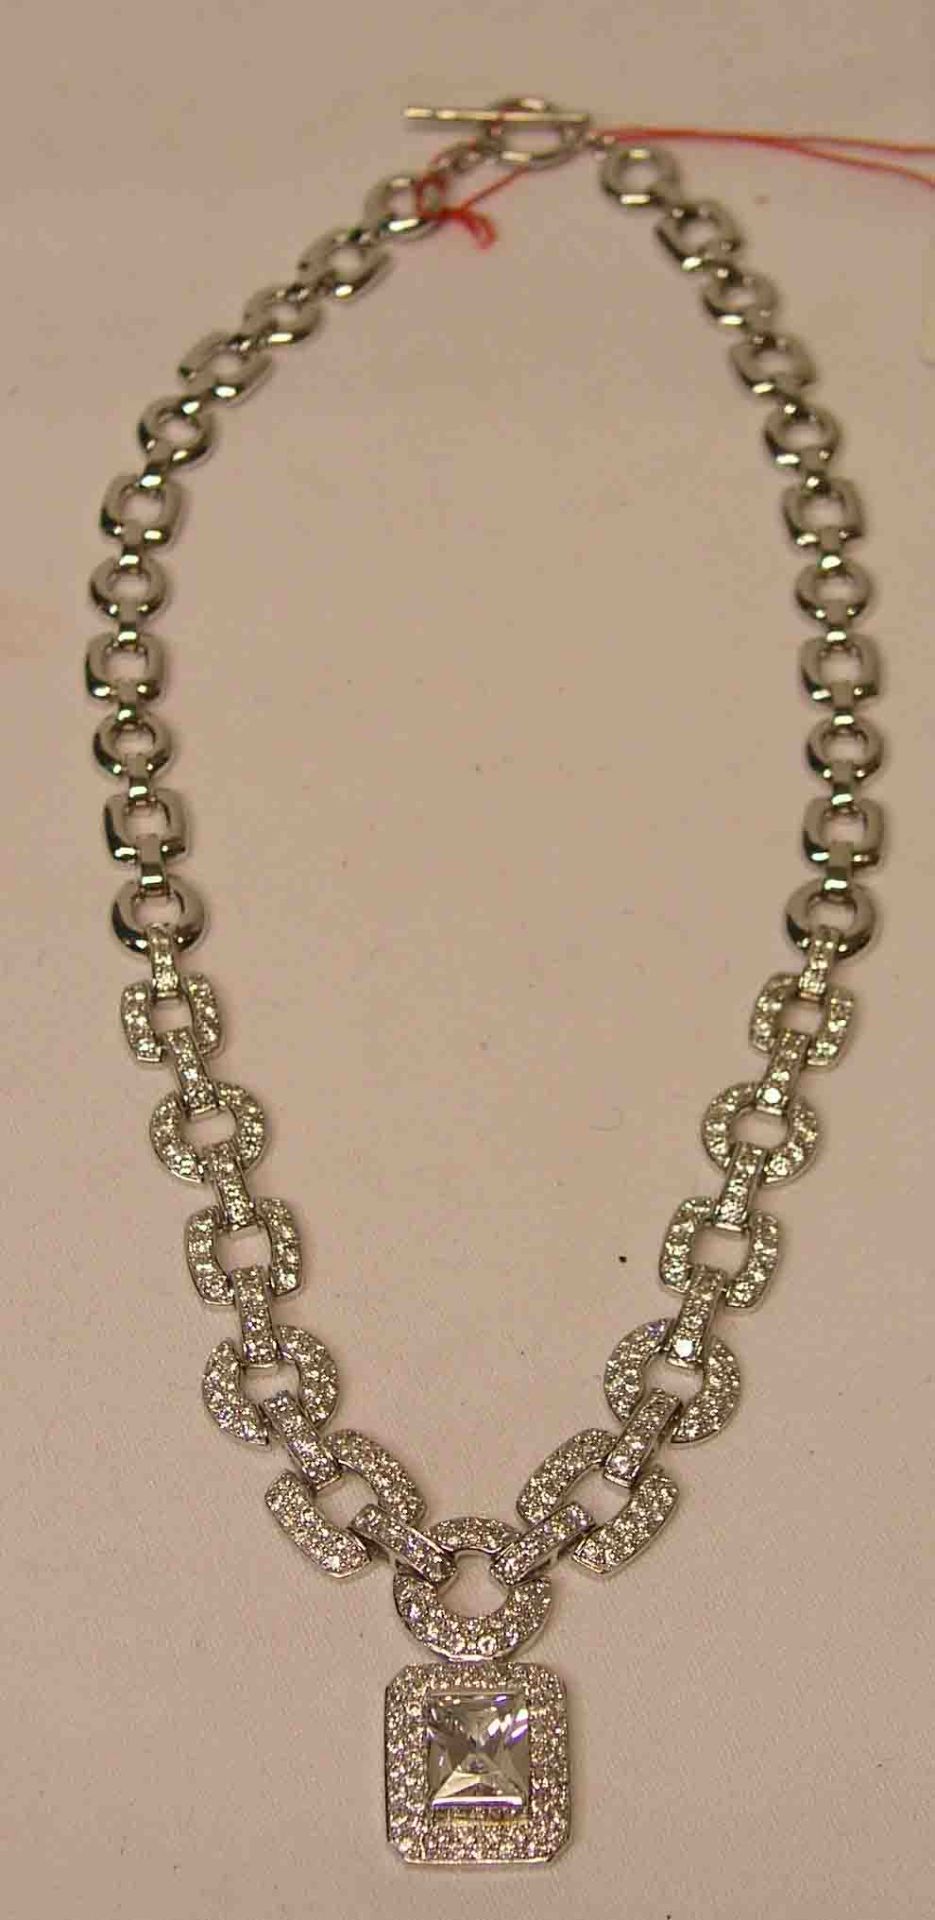 Halskette mit Anhänger. Sterling-Silber, Steinbesatz. Länge: 44cm.